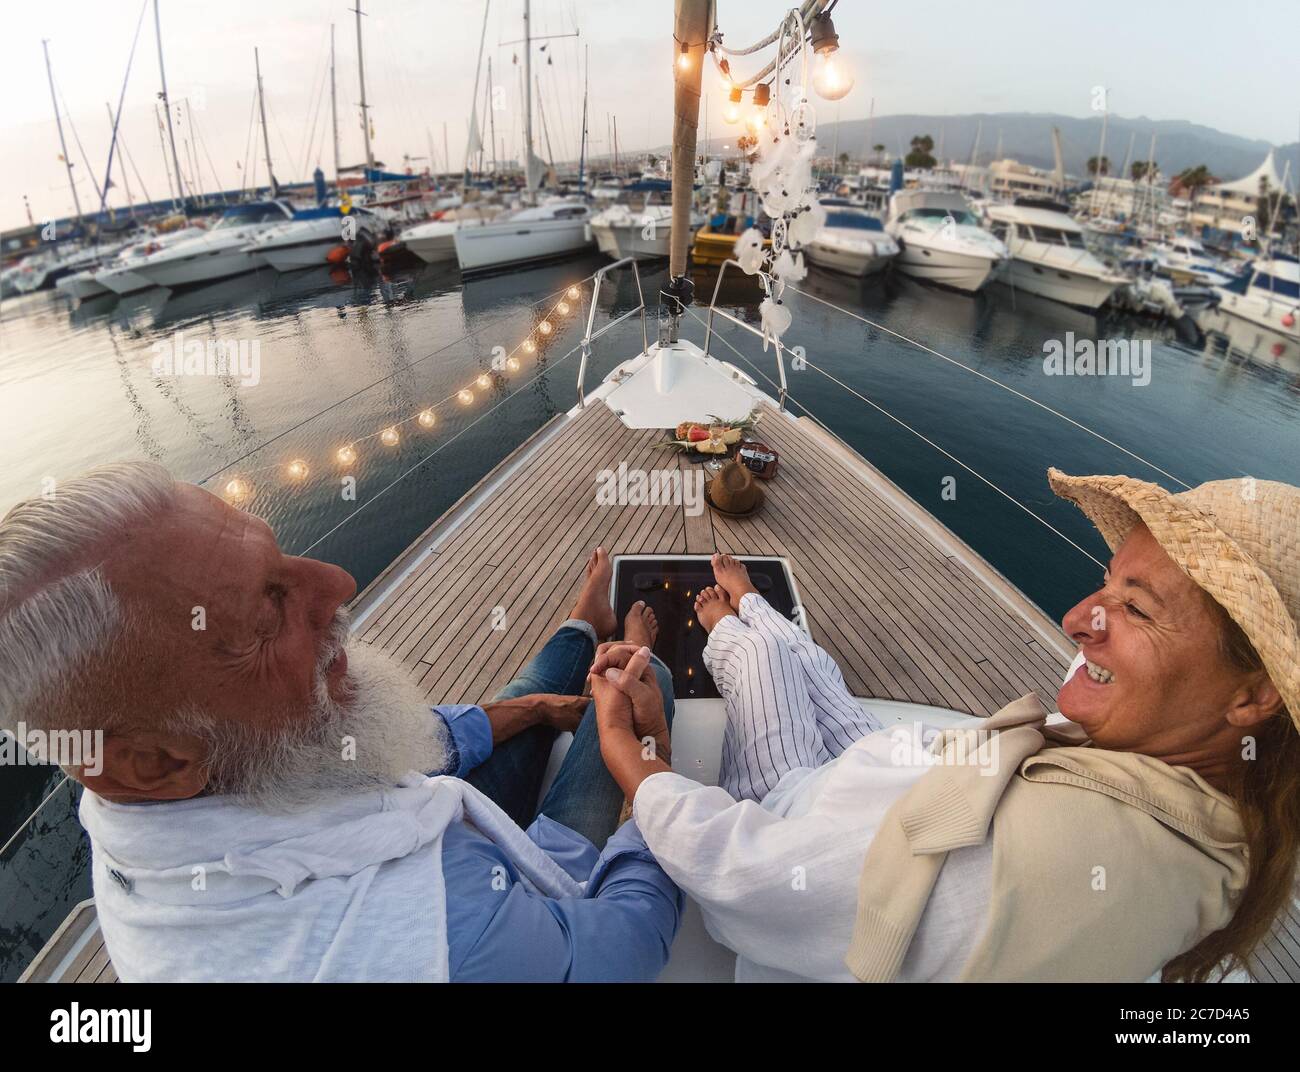 Senioren auf Segelbooturlaub - Glückliche ältere Menschen haben Spaß, Hochzeitstag auf Bootsfahrt zu feiern Stockfoto